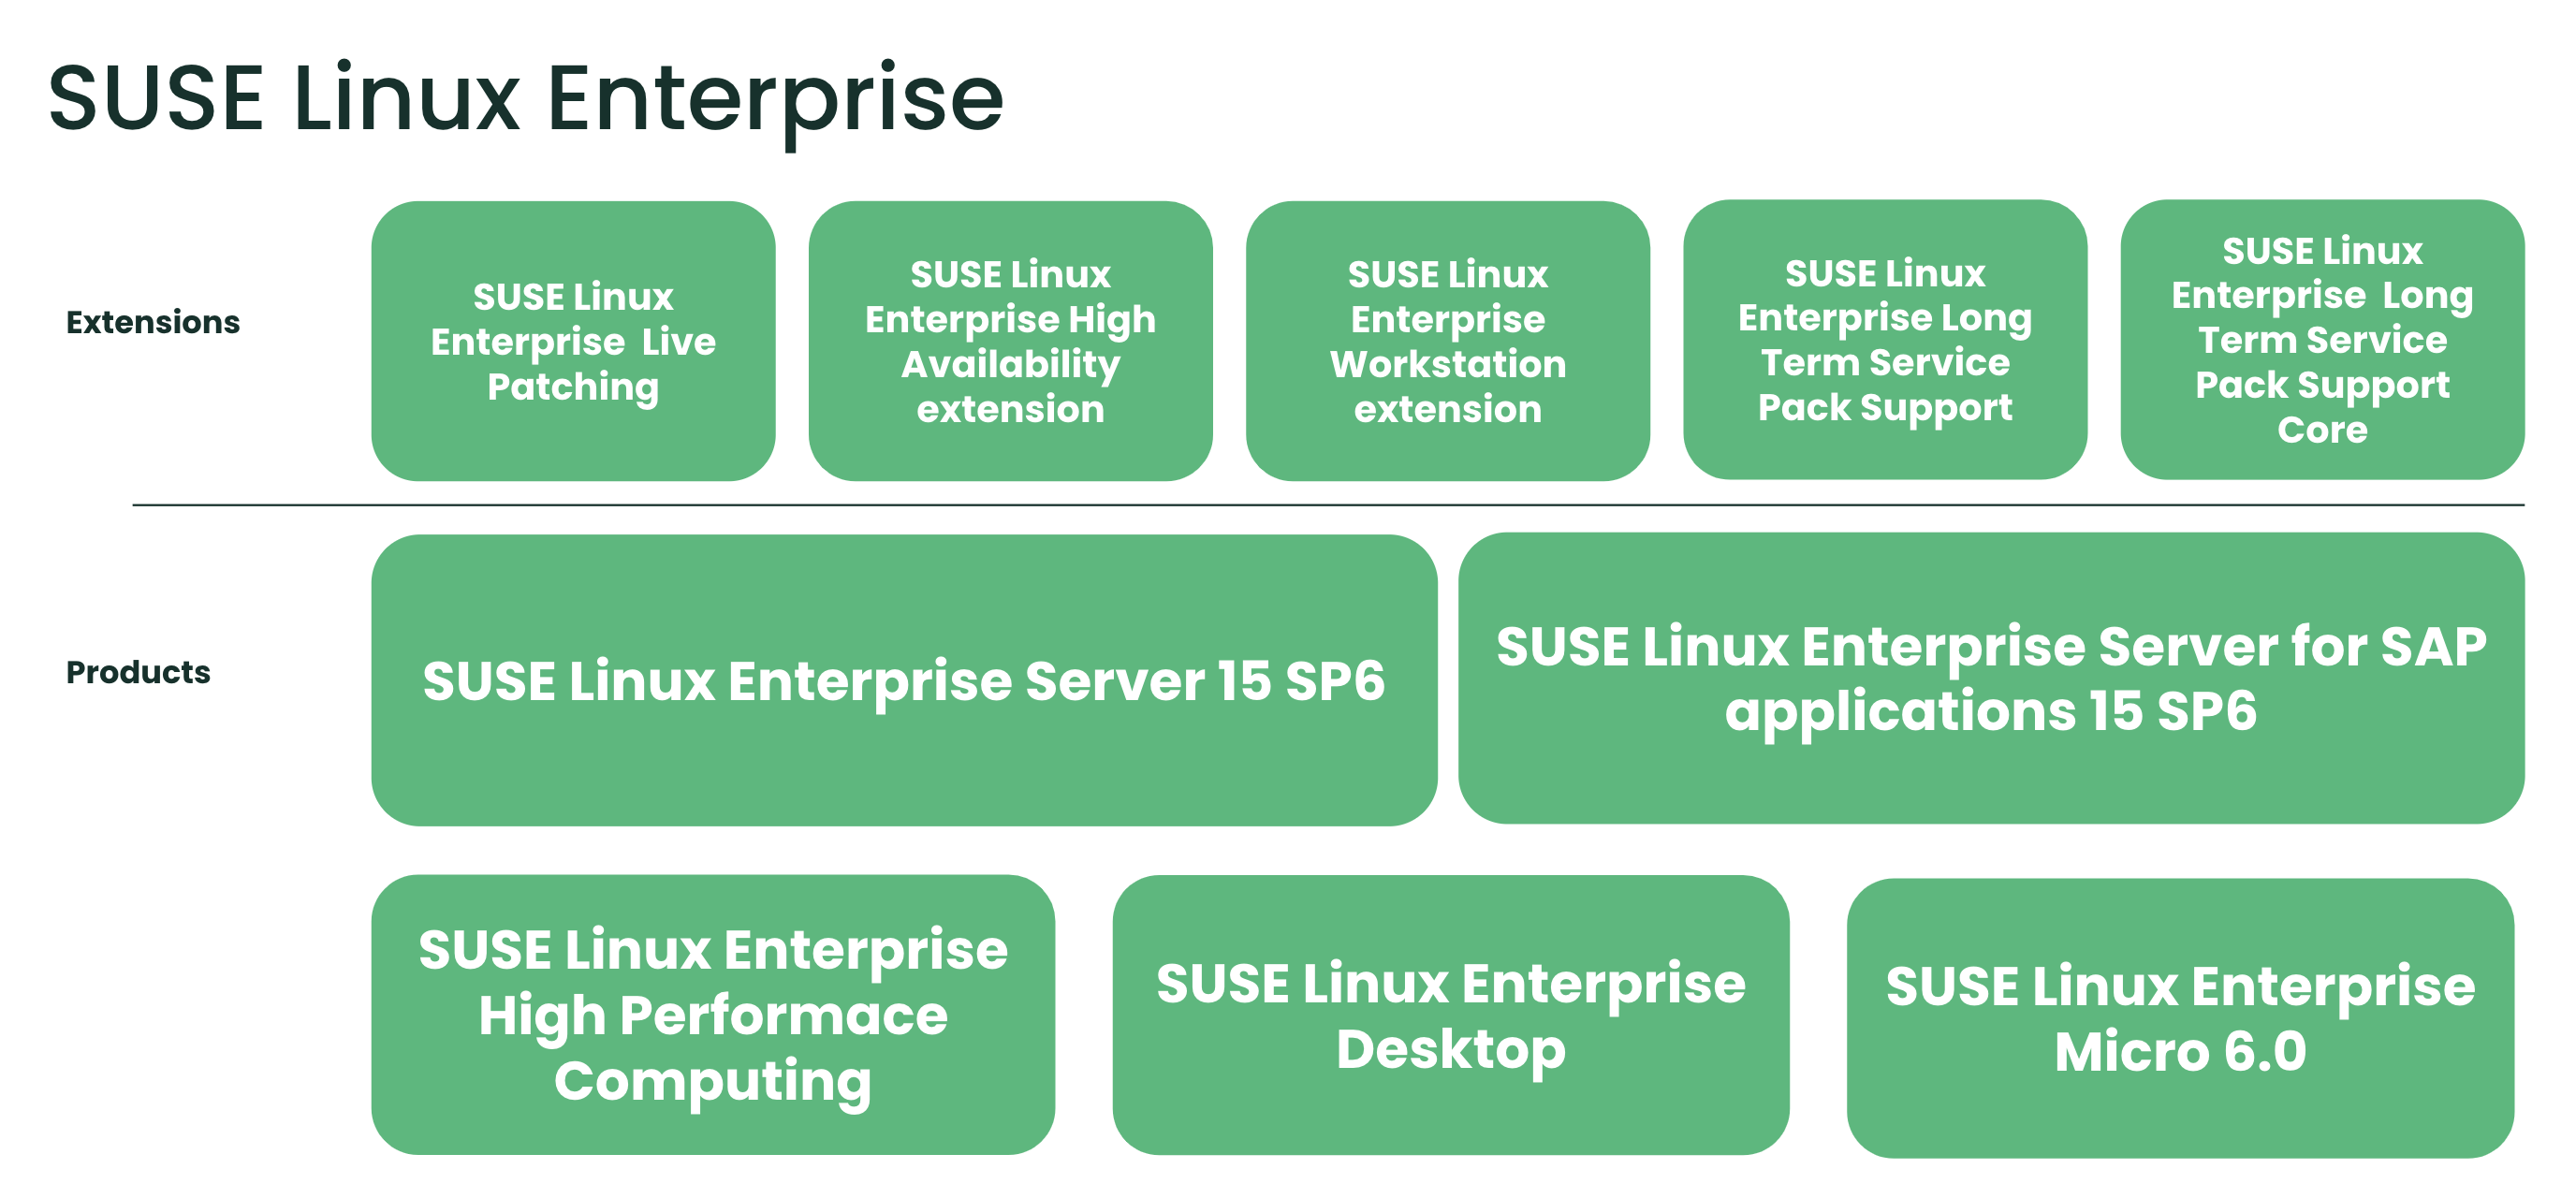 SUSE Linux Enterprise products